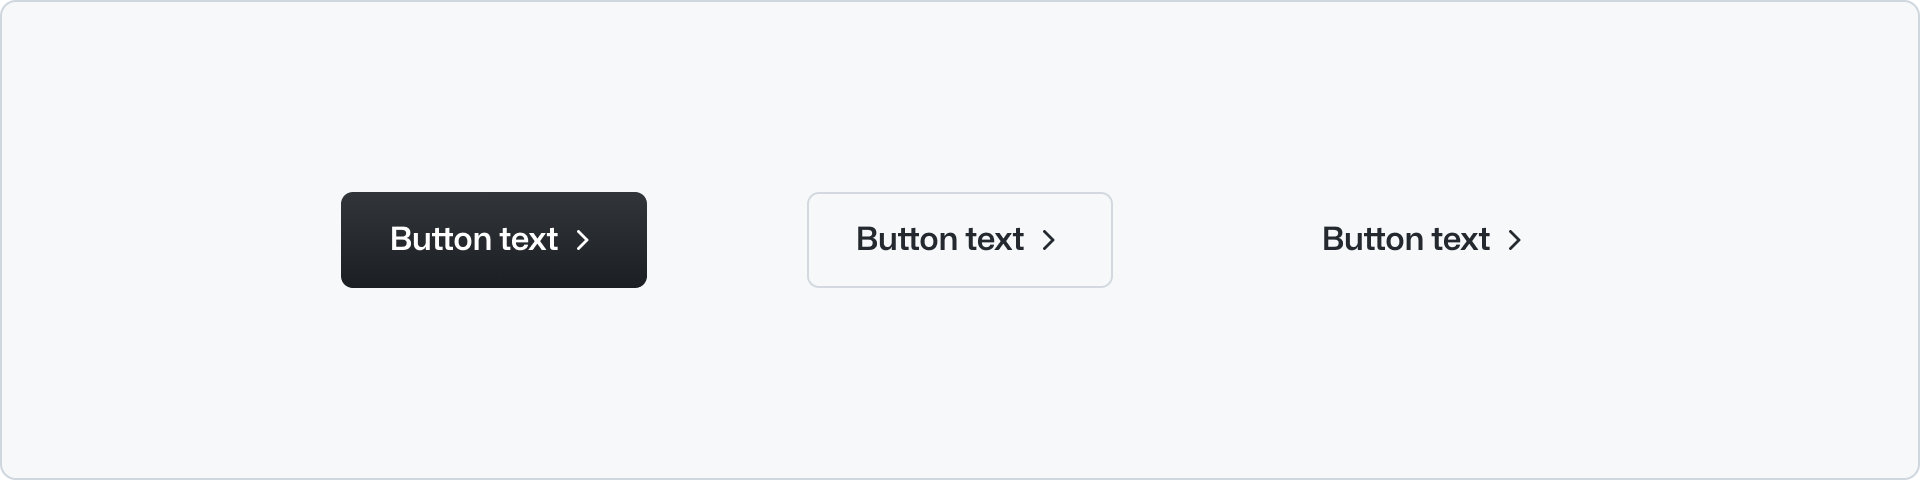 A marketing button Rails component